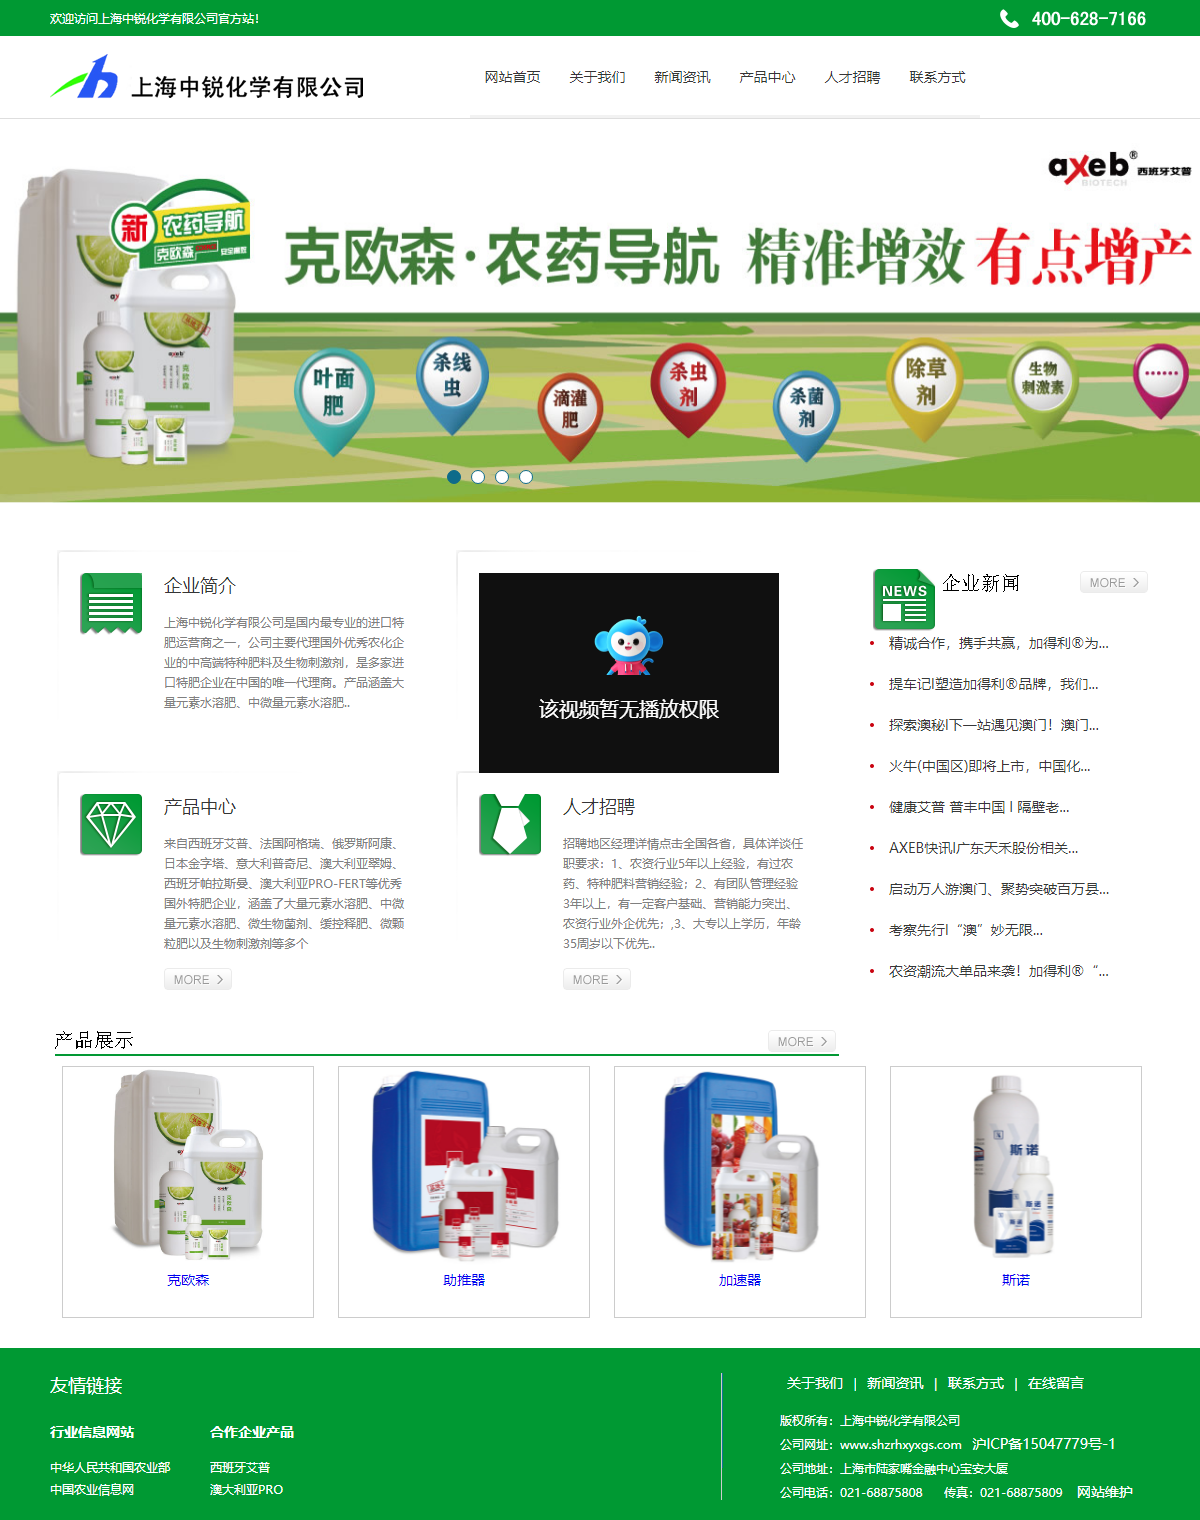 上海中锐化学有限公司网站案例